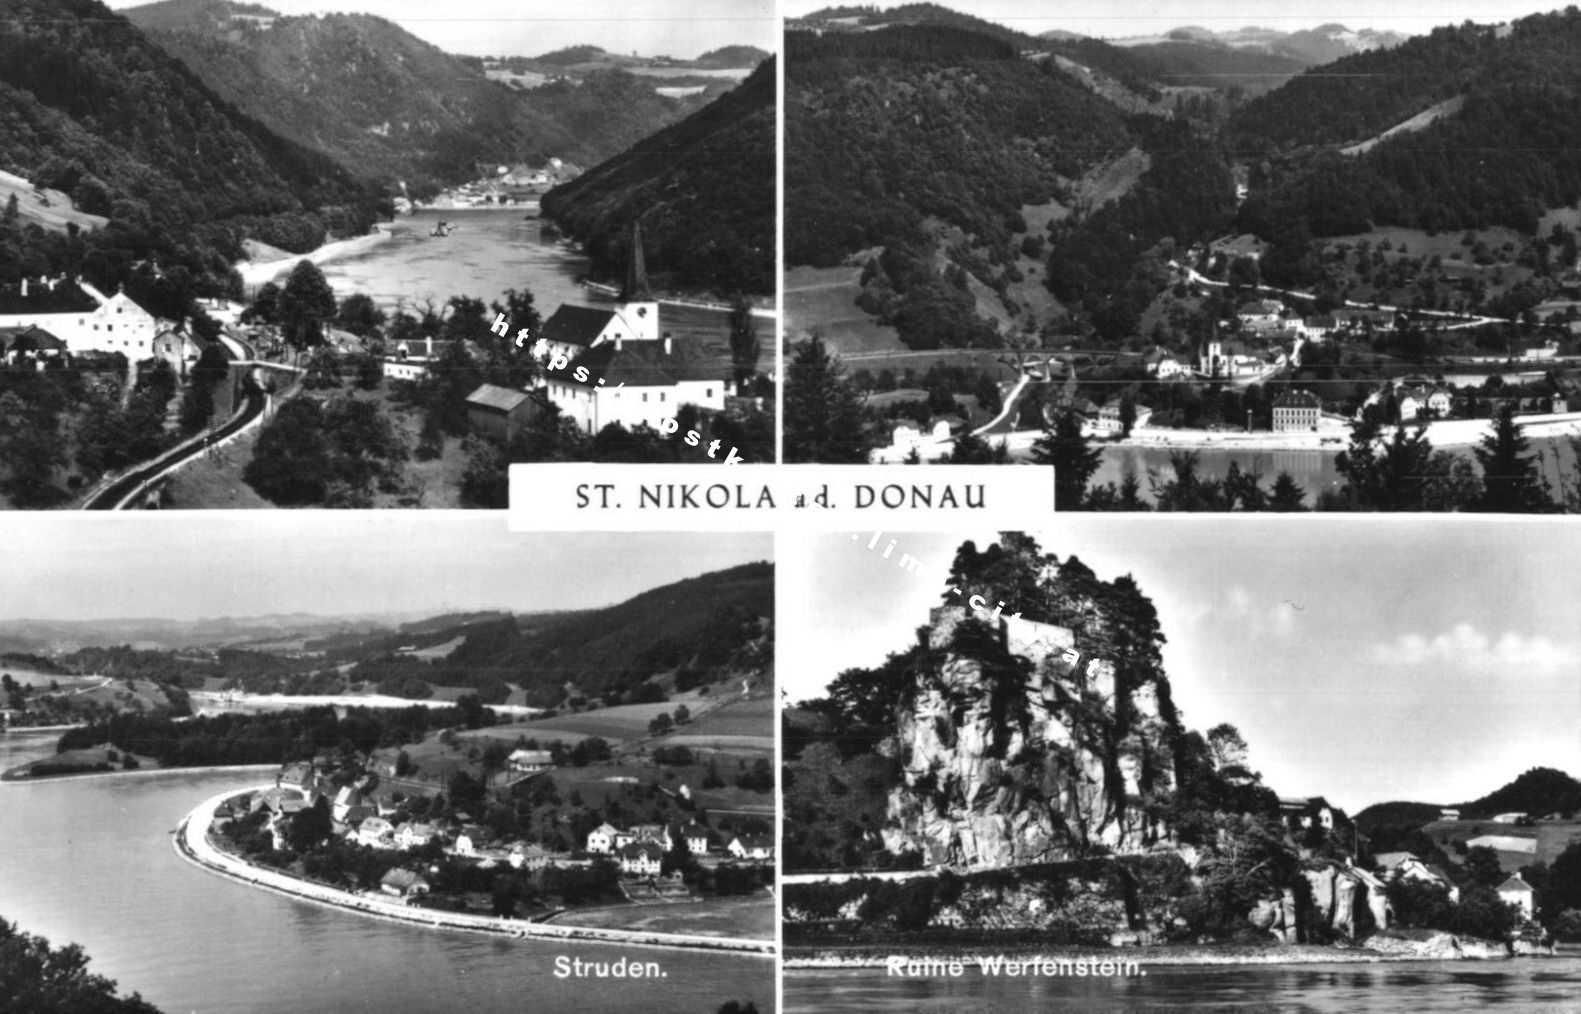 St. Nikola an der Donau 1972